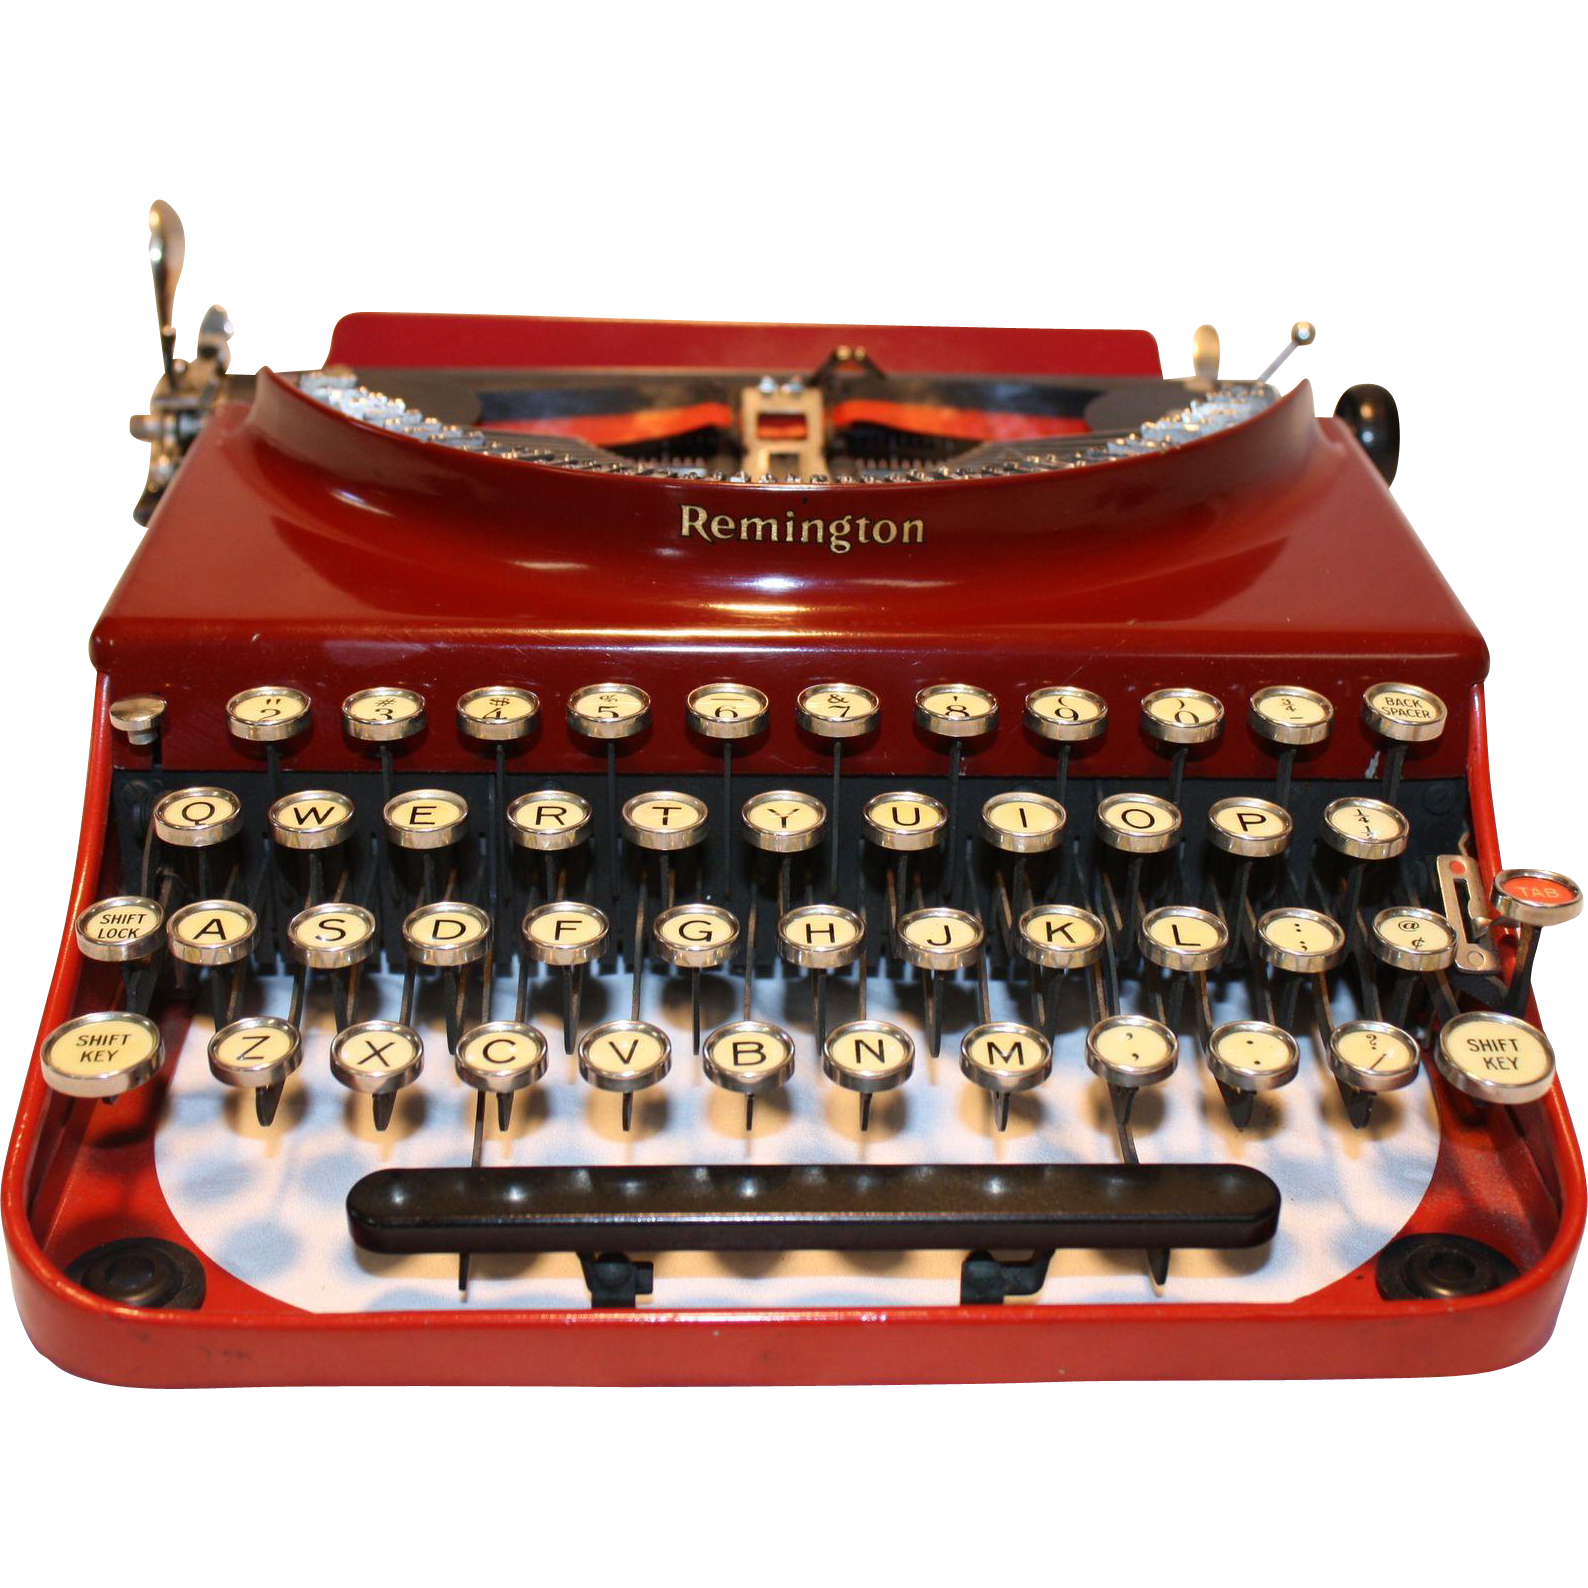 Antique Portable Typewriter Download Free Image PNG Image